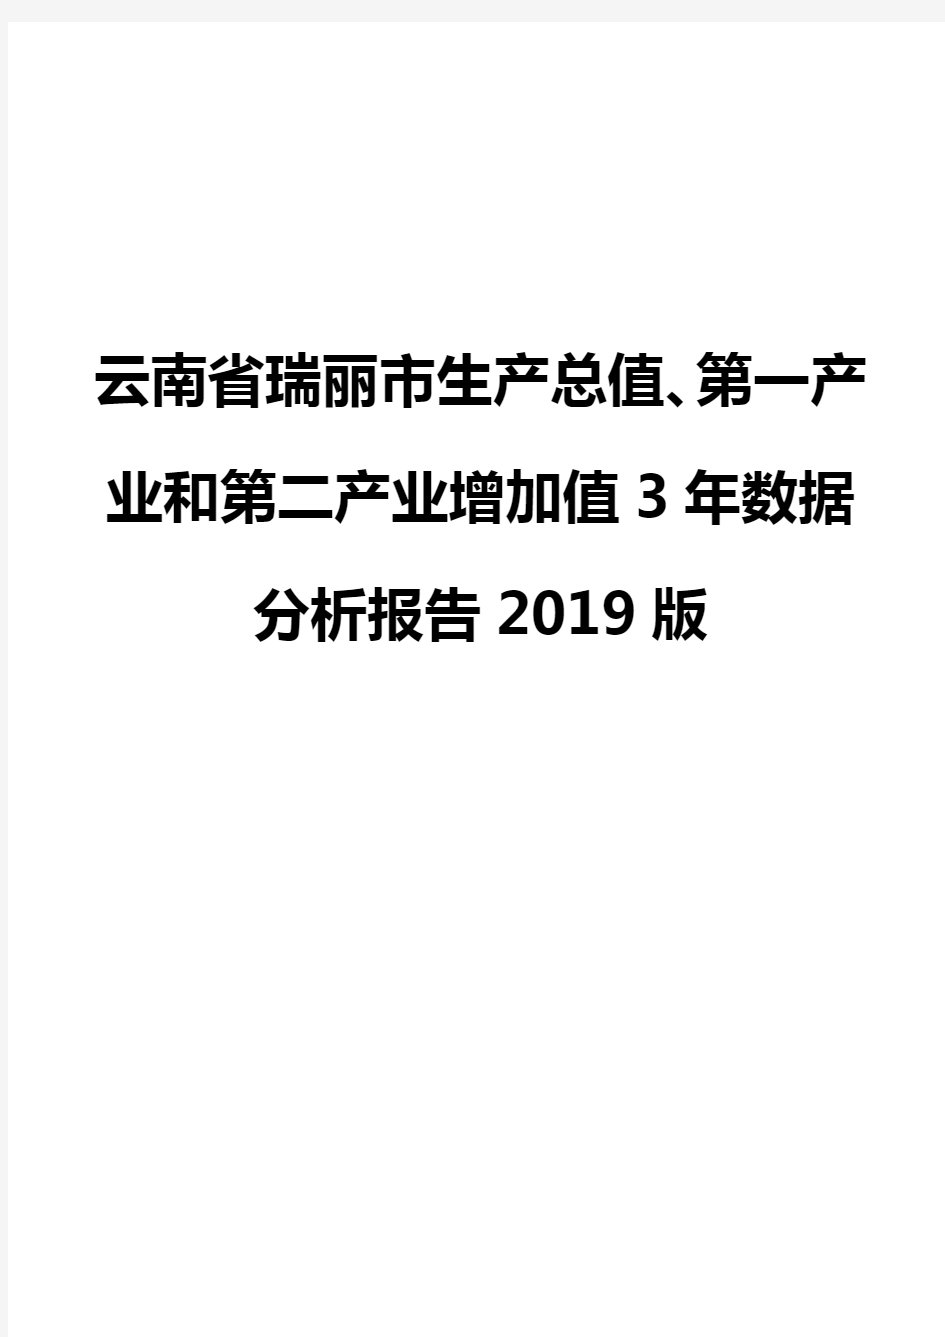 云南省瑞丽市生产总值、第一产业和第二产业增加值3年数据分析报告2019版